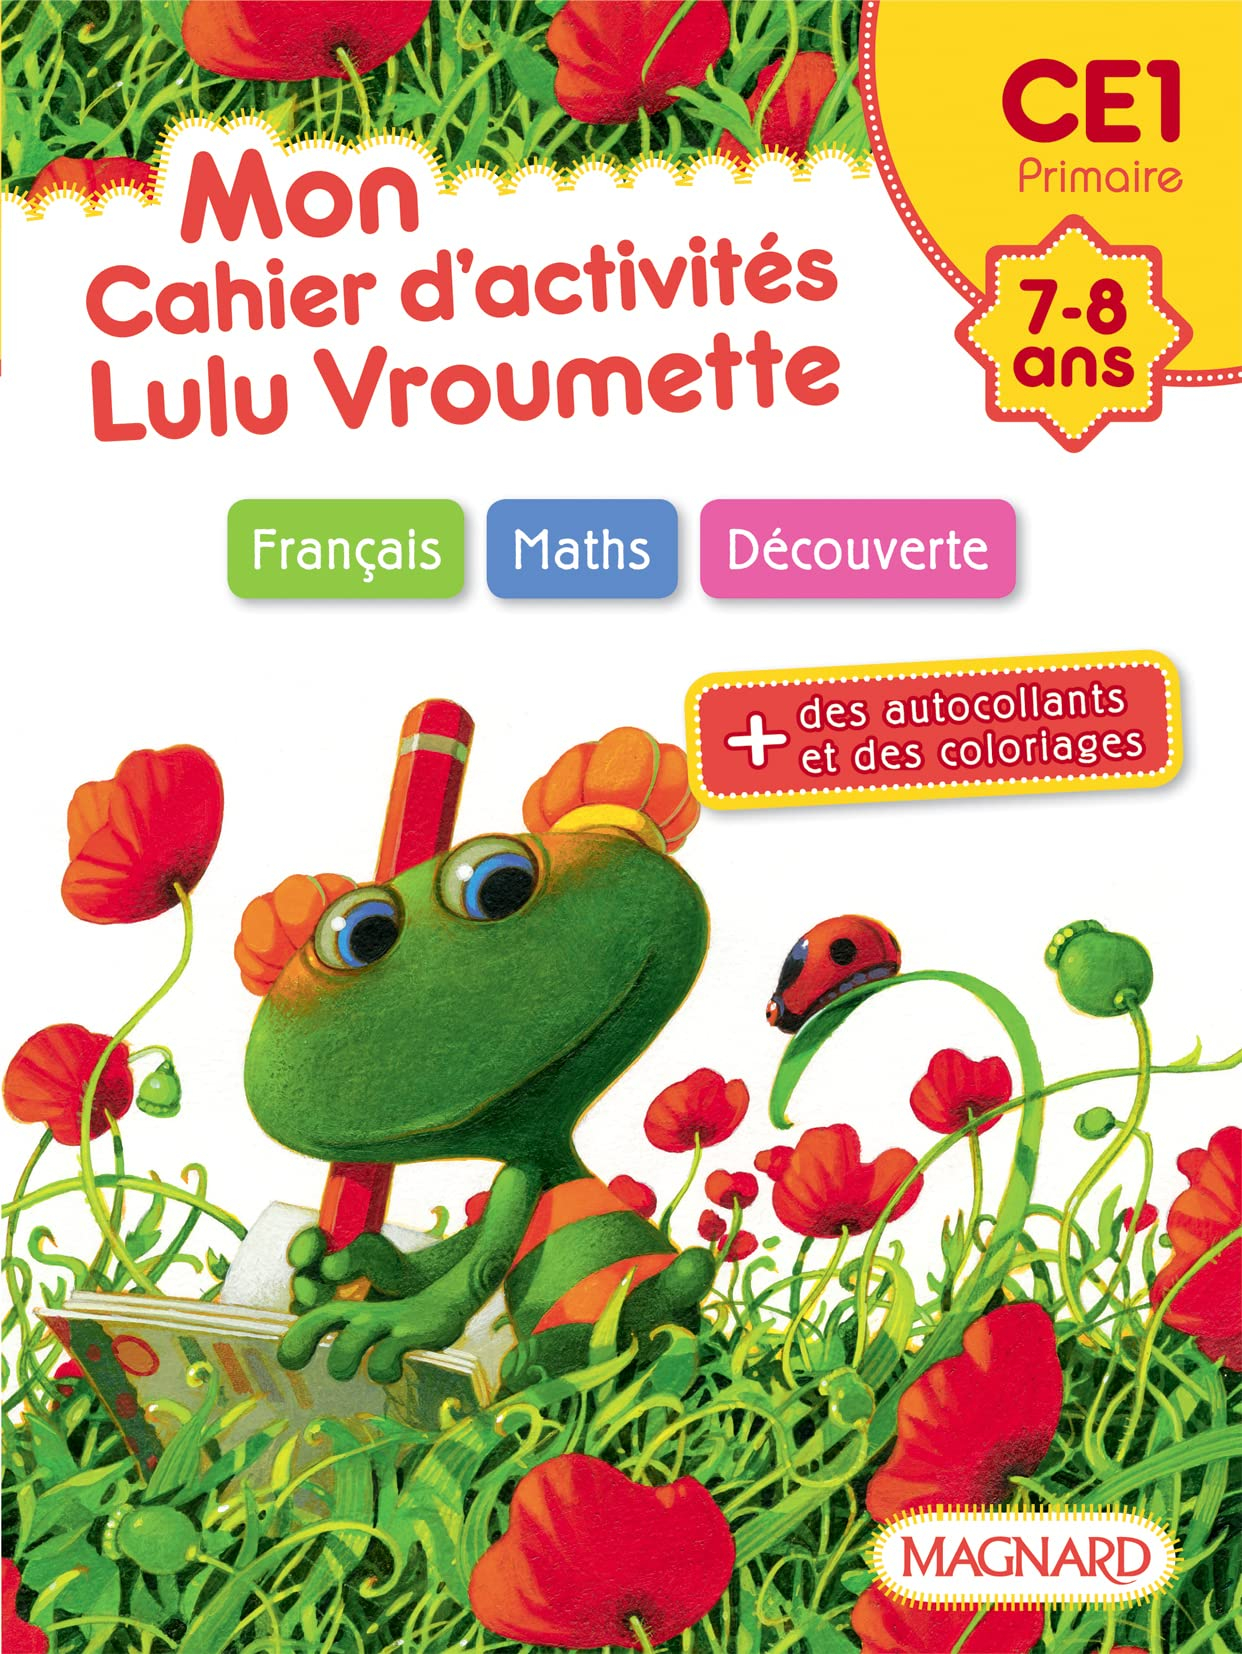 Mon cahier d'activités Lulu Vroumette : CE1 primaire, 7-8 ans